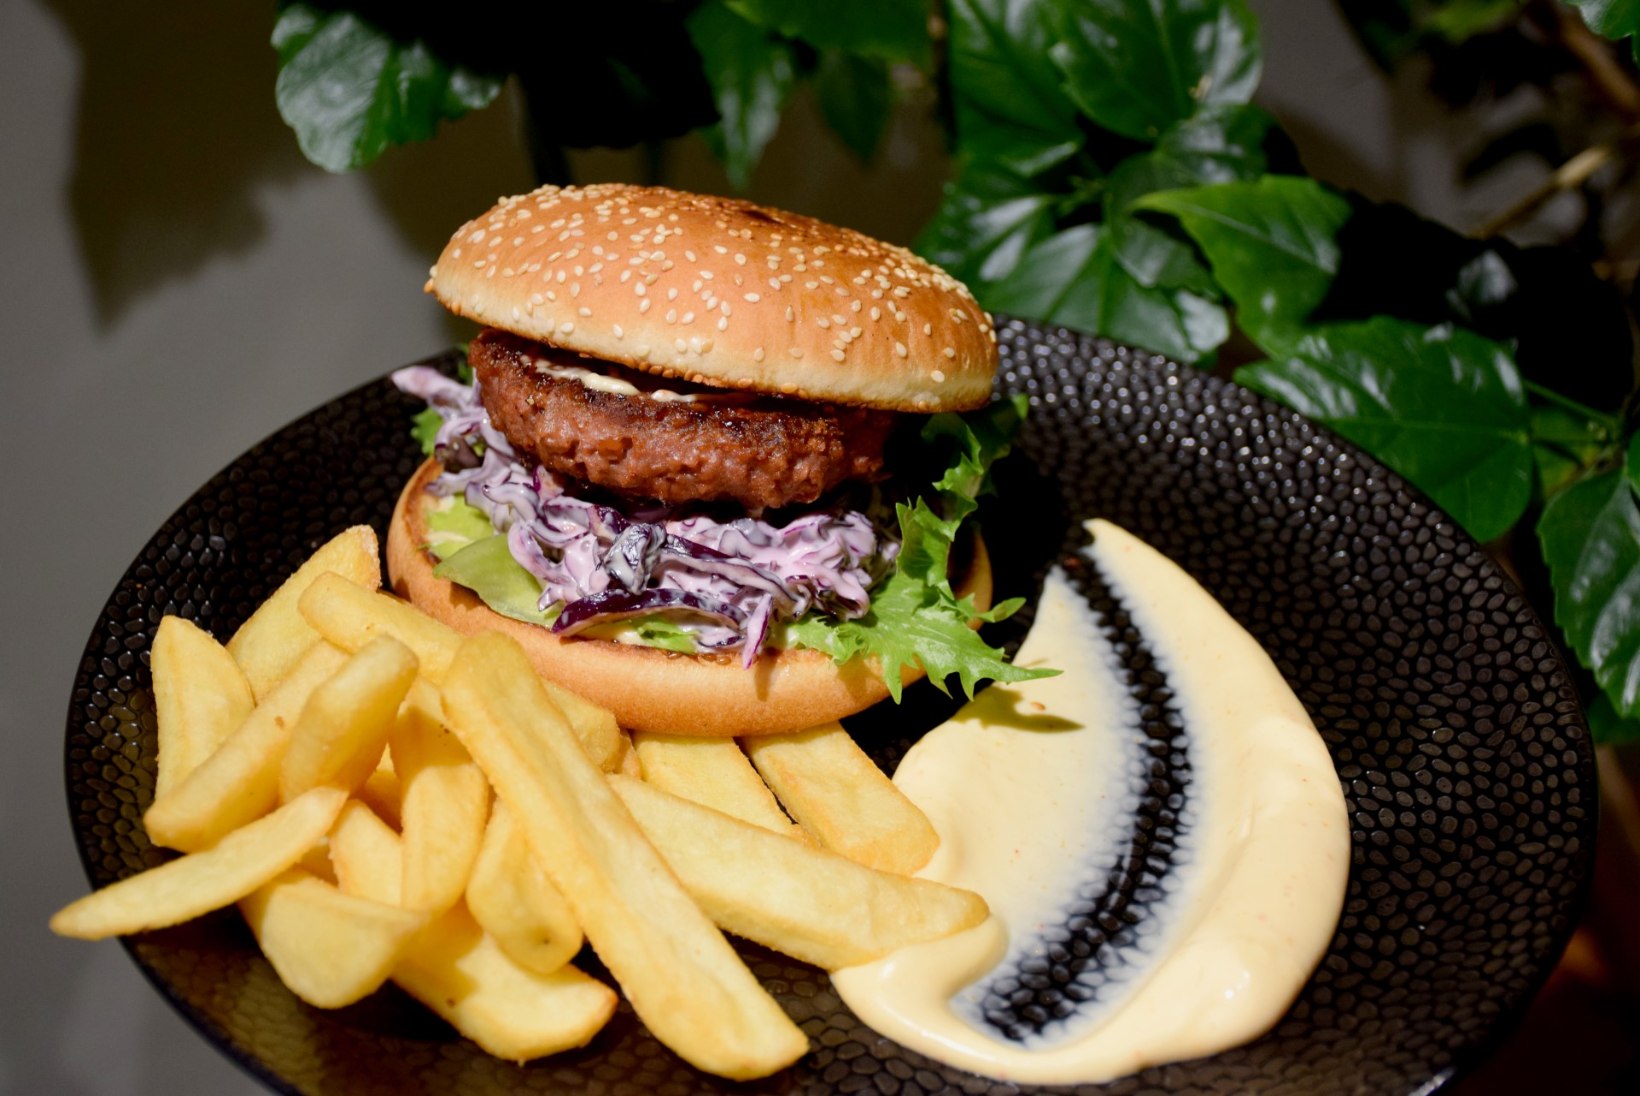 HEAD ISU! 9 hõrku veganburgerit, mida sel aastal Tartus proovima peab